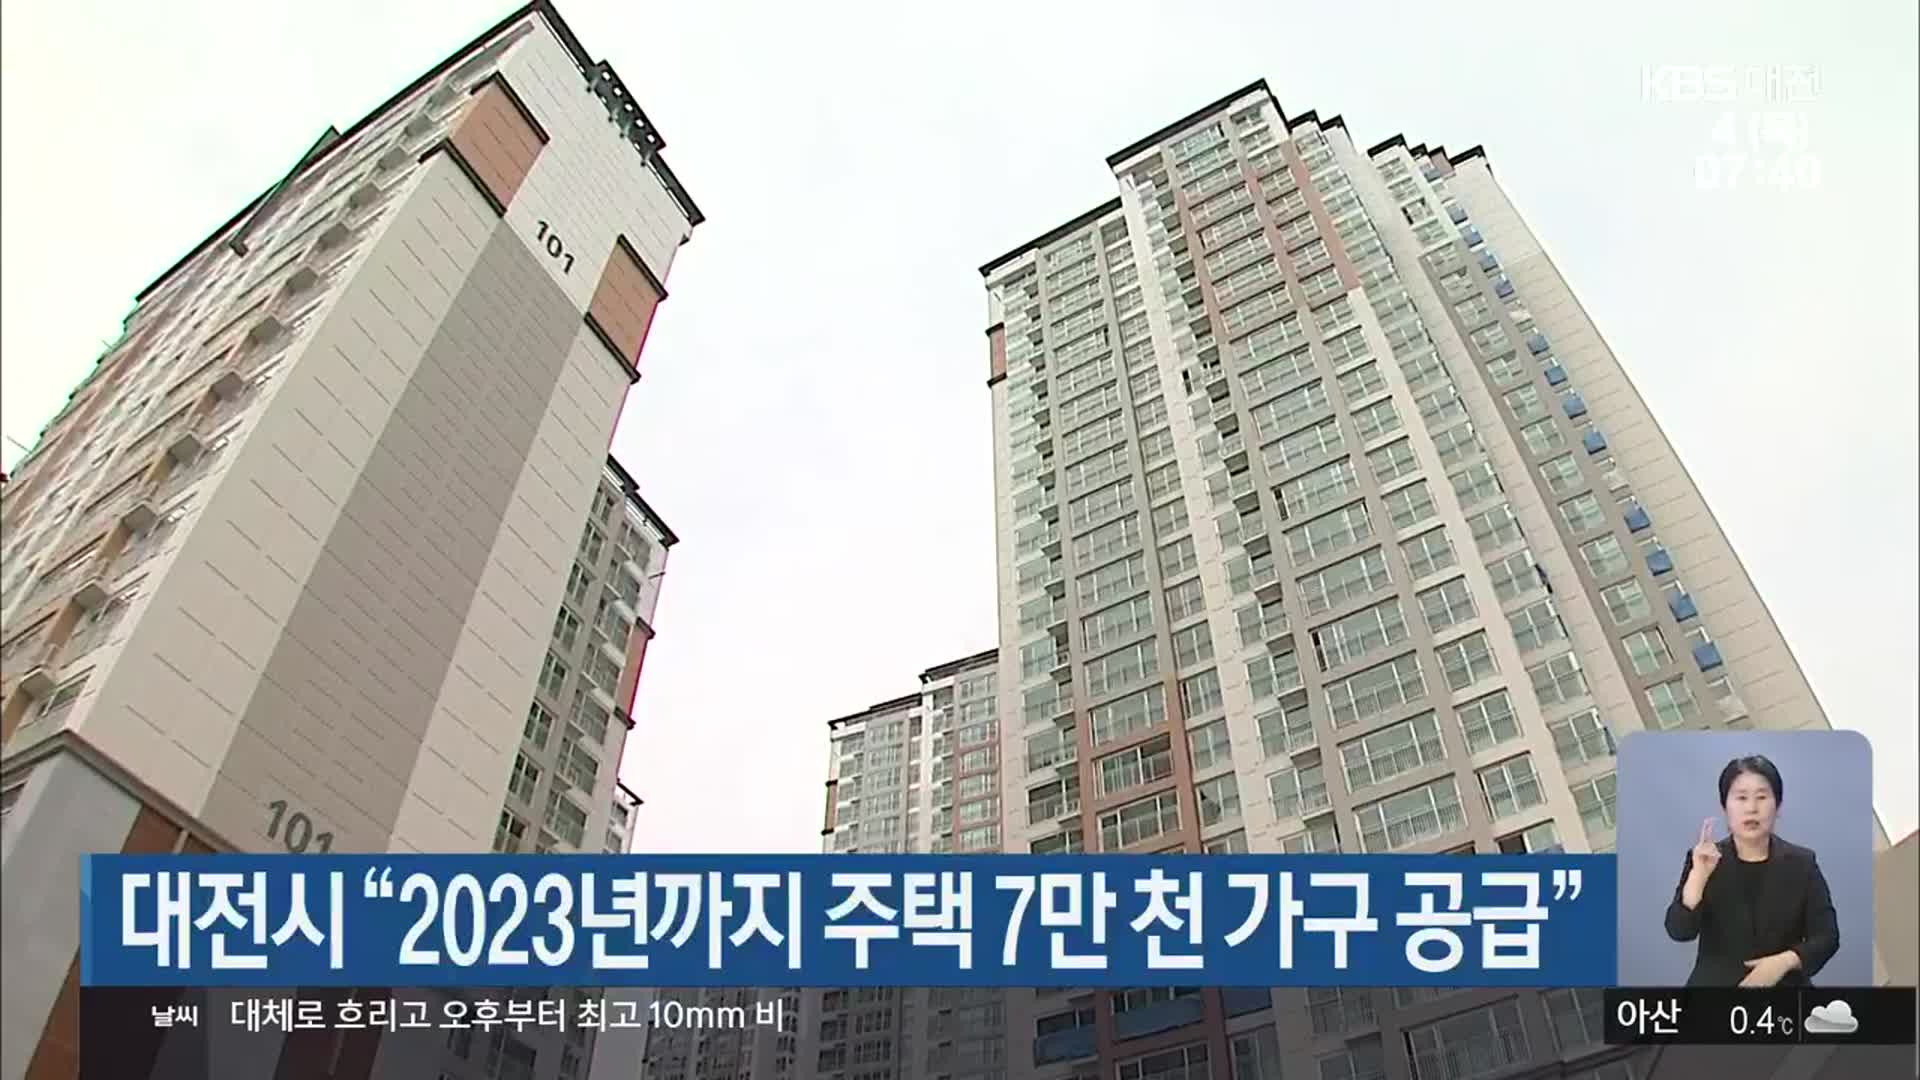 대전시 “2023년까지 주택 7만 천 가구 공급”